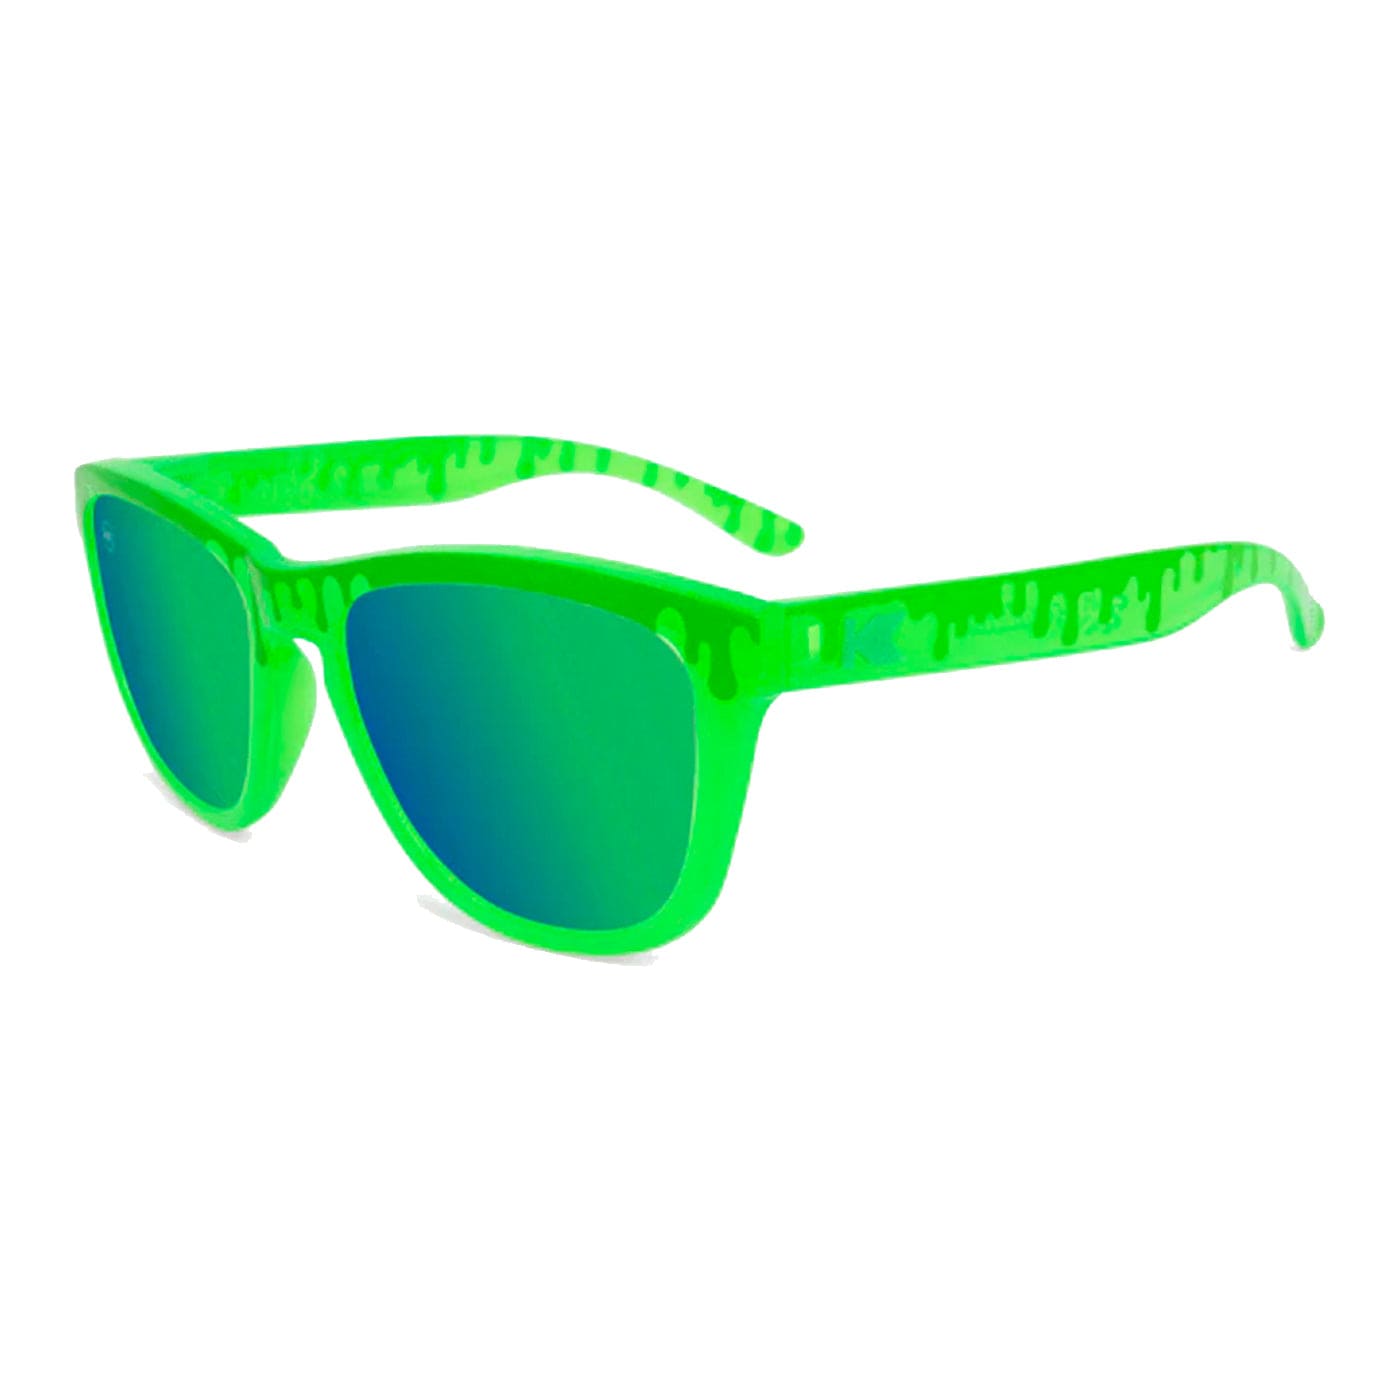 Knockaround Sunglasses Slime Time Kids Premiums XMiles